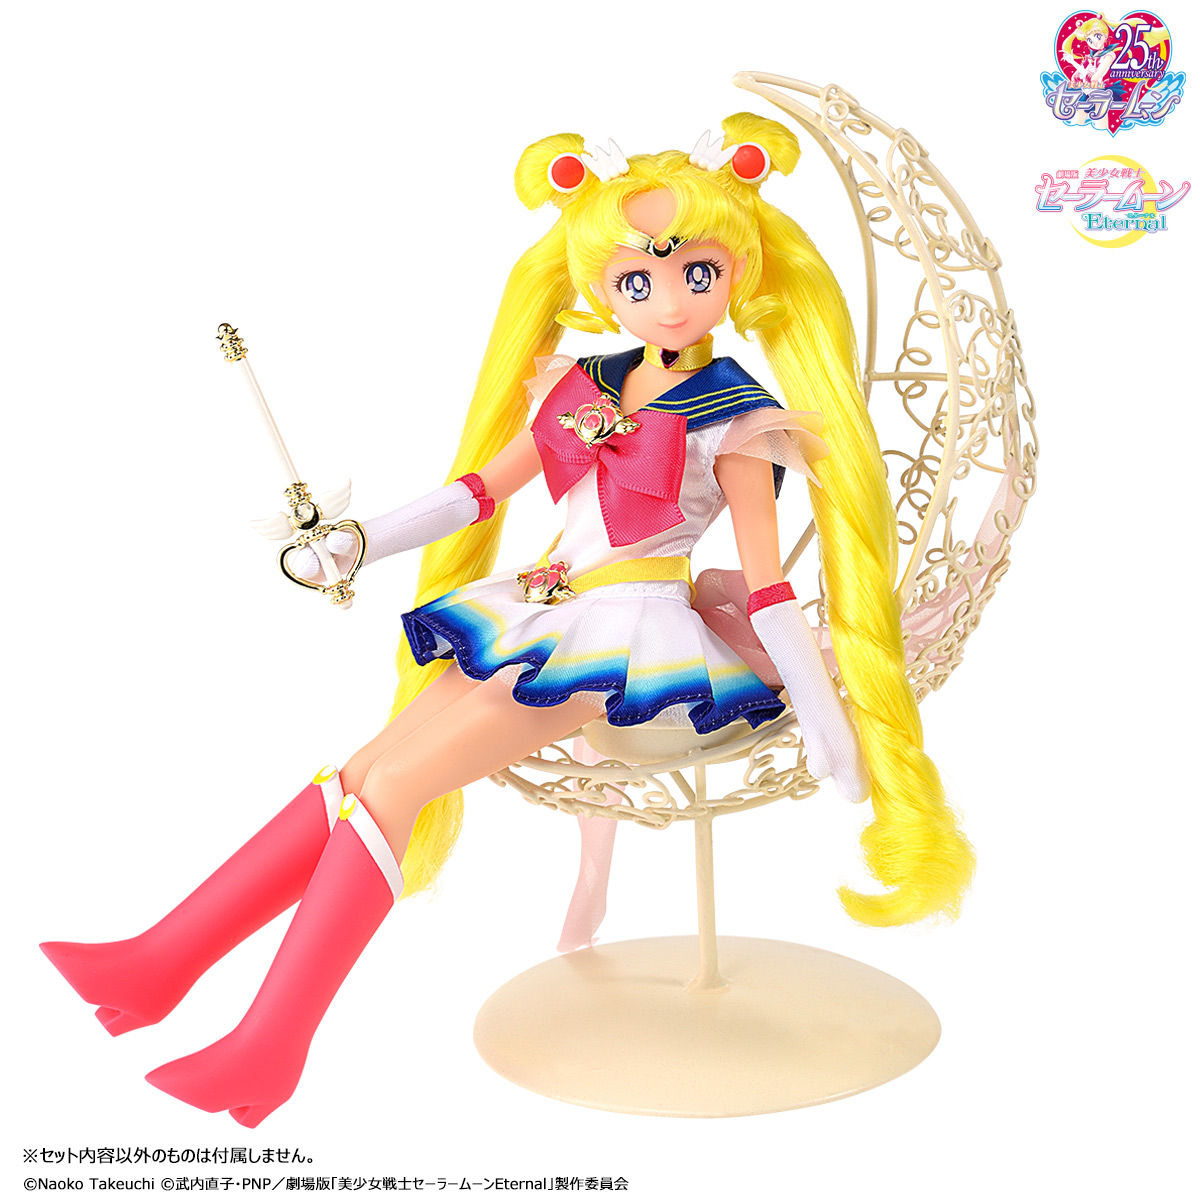 【セラムン】StyleDoll Super Sailor Moon『スタイルドール スーパーセーラームーン』完成品ドール【バンダイ】より